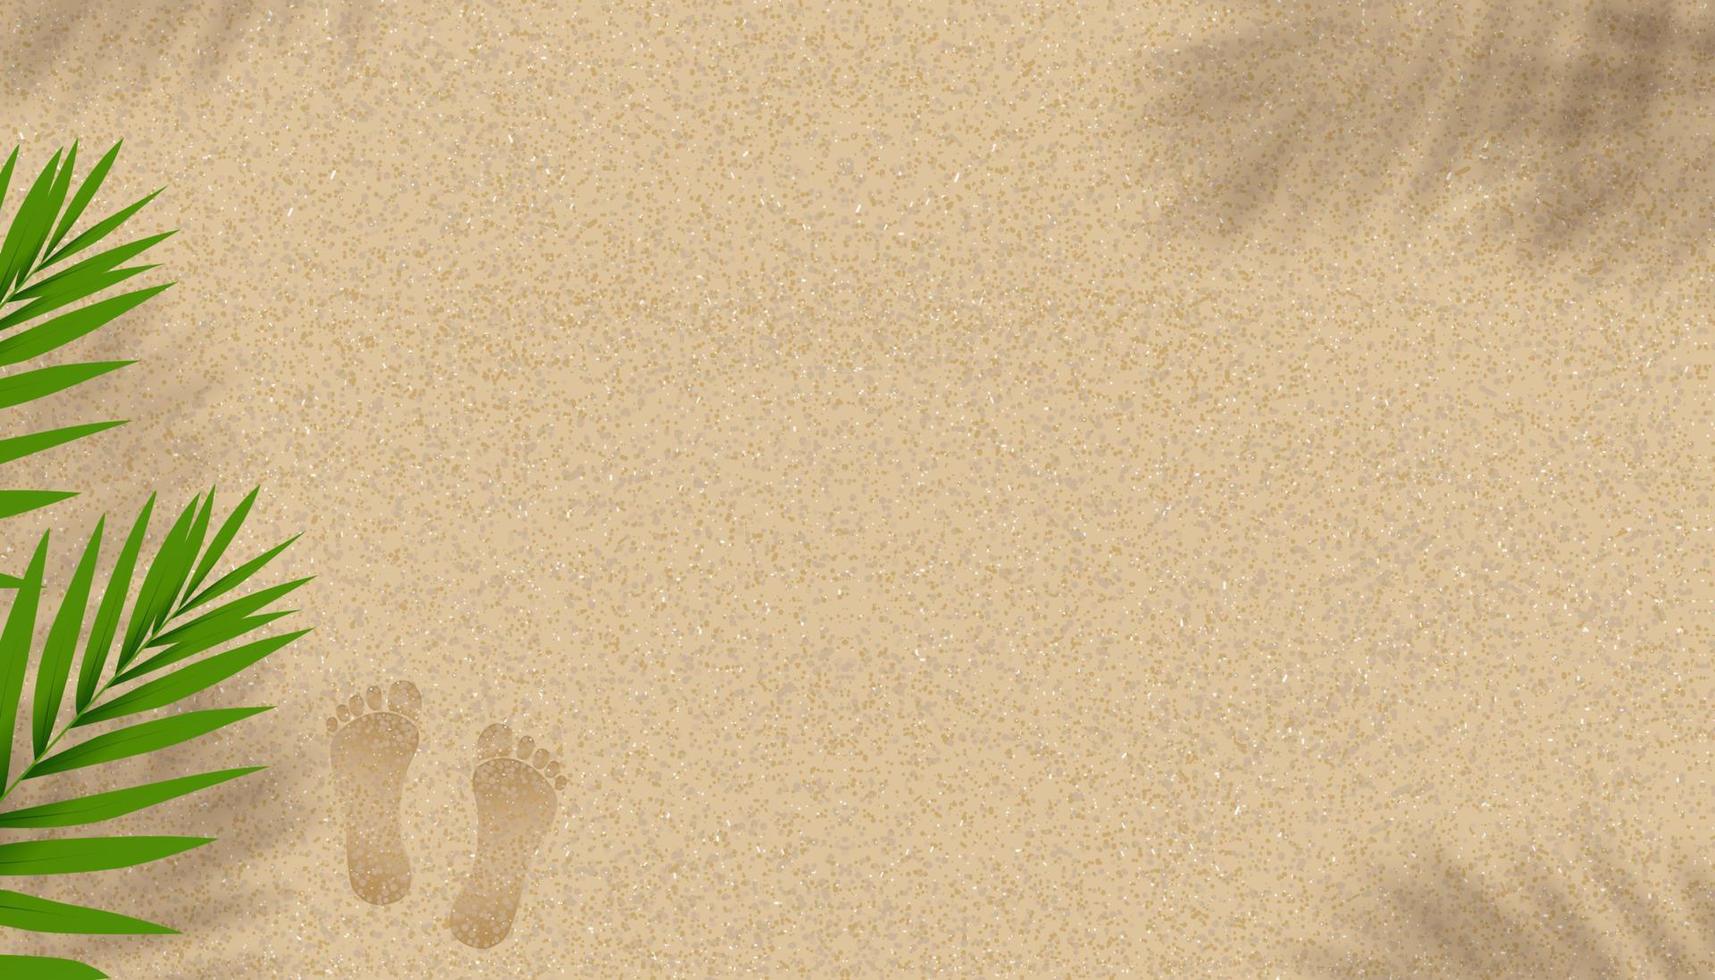 fondo de textura de playa de arena con sombra de hojas de palma de coco y huellas, fondo de horizonte vectorial con silueta descalza y hoja tropical en duna de arena de playa marrón para pancarta de verano vector